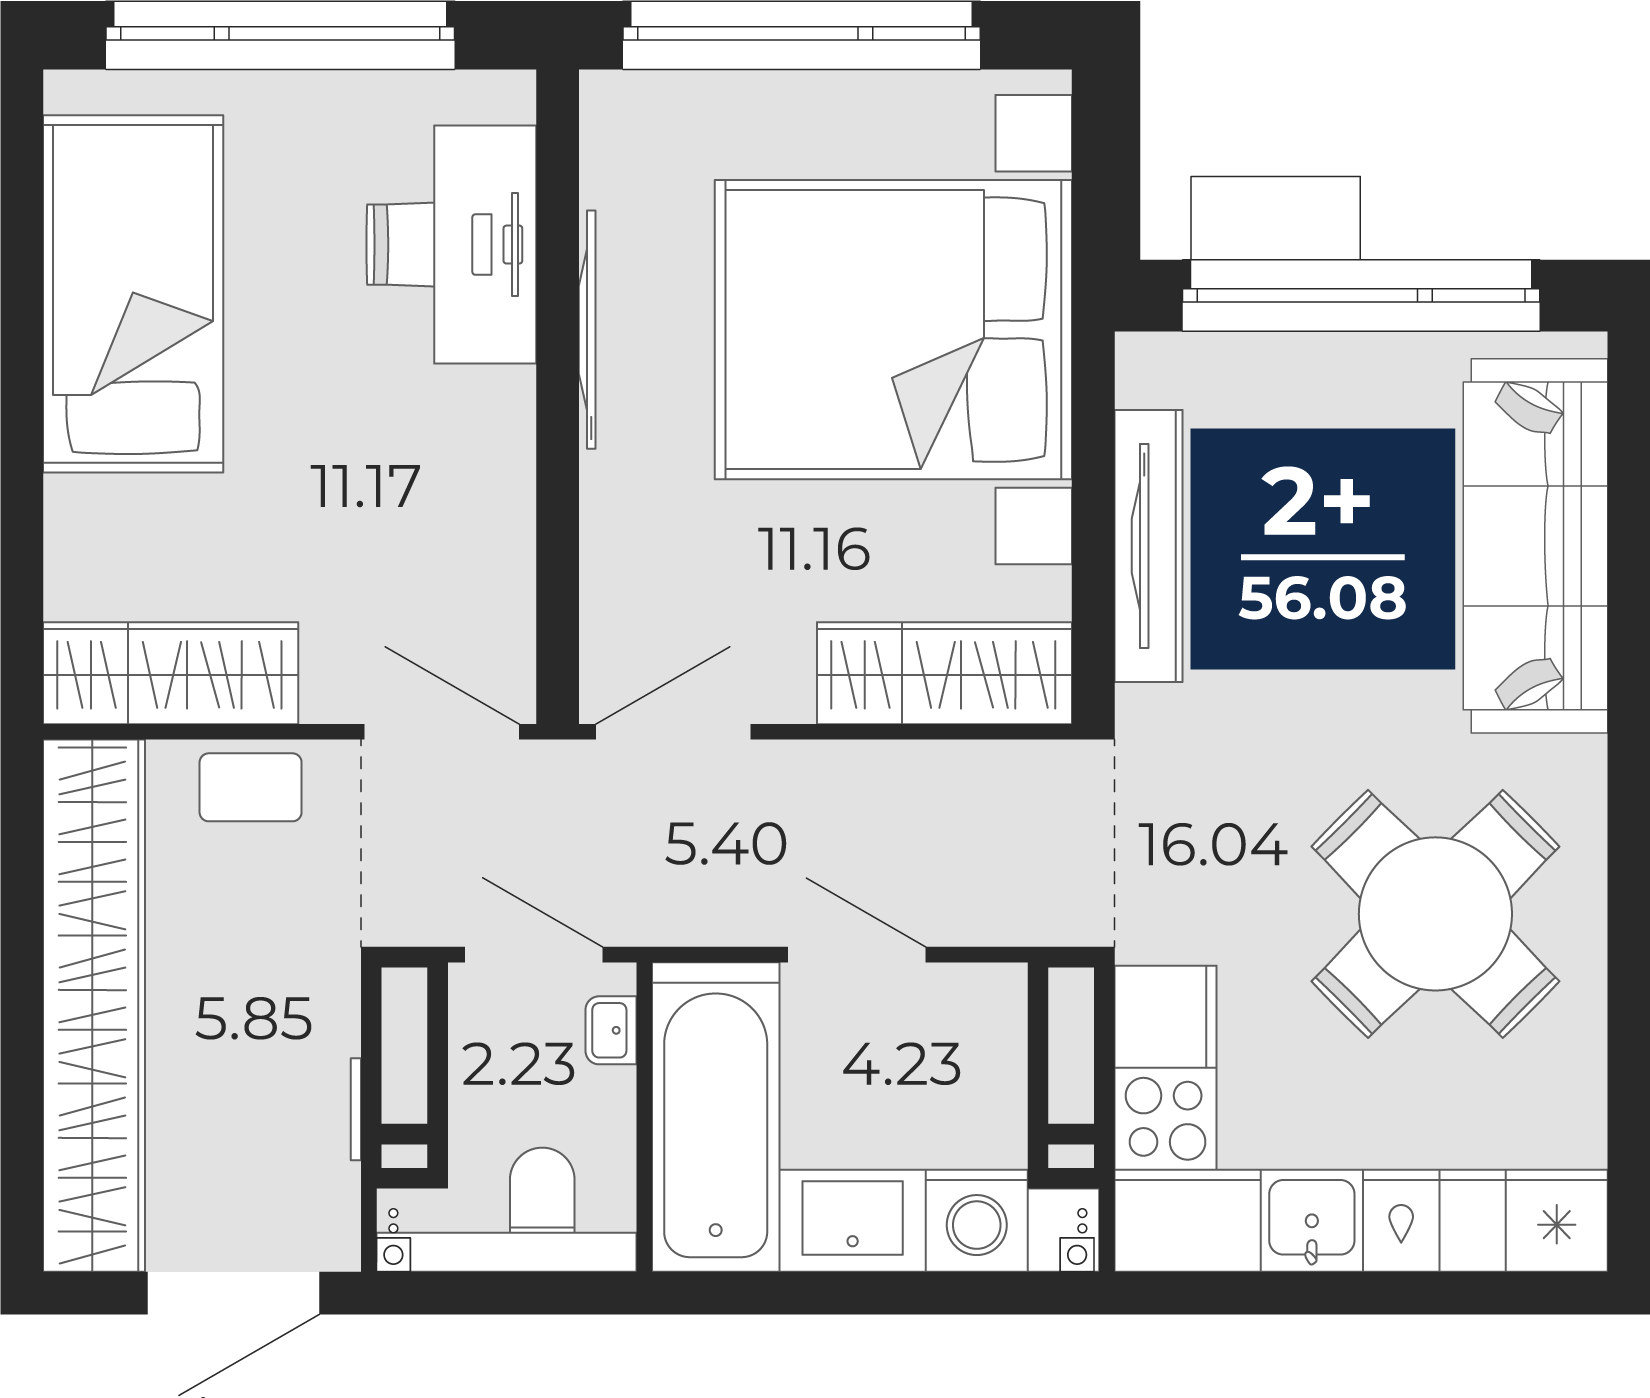 Квартира № 264, 2-комнатная, 56.08 кв. м, 16 этаж